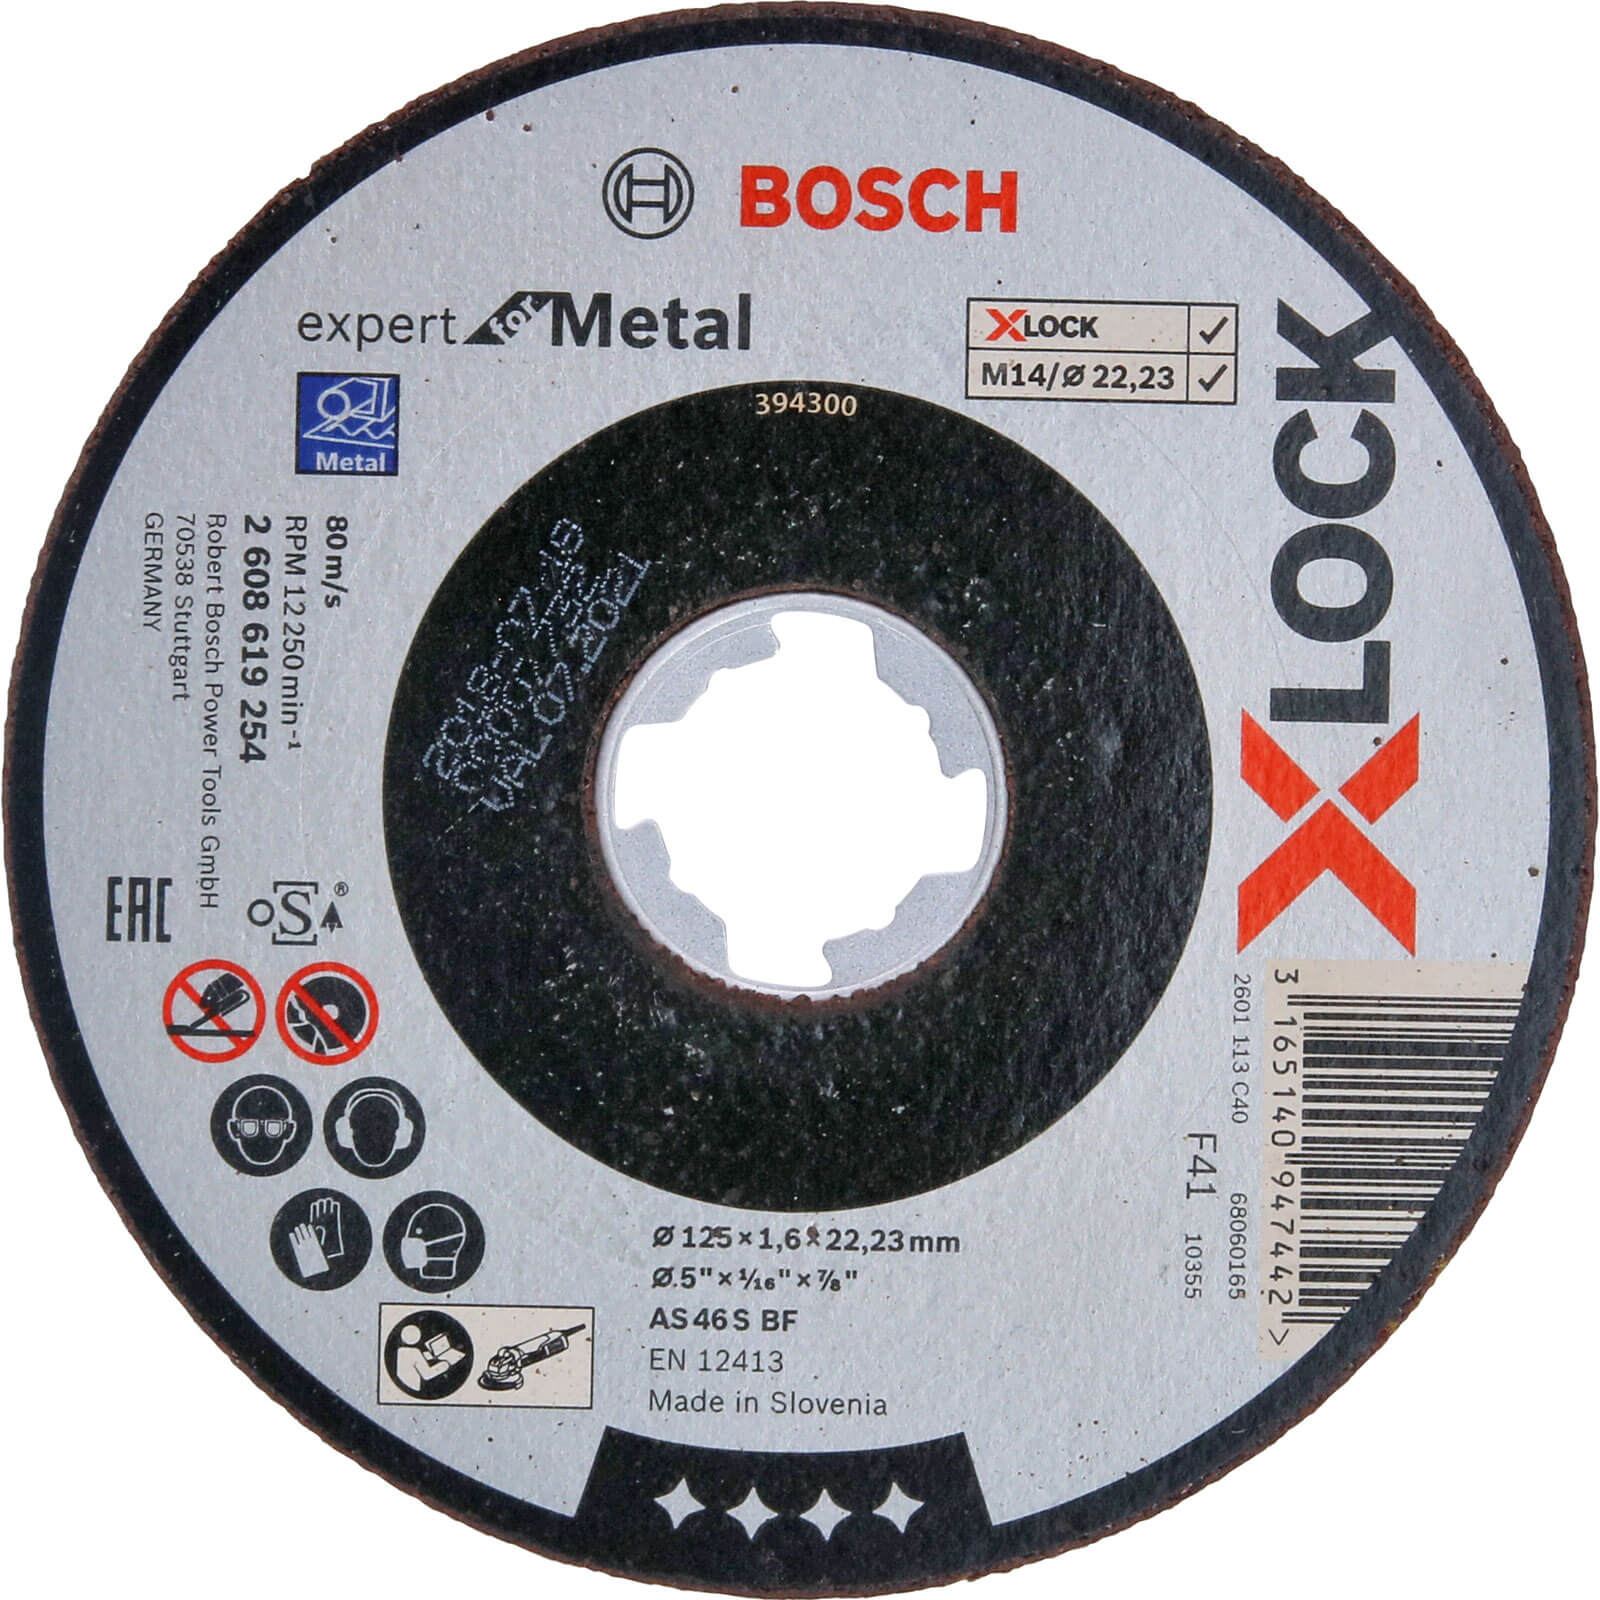 Photo of Bosch Expert X Lock Metal Cutting Disc 125mm 1.6mm 22mm